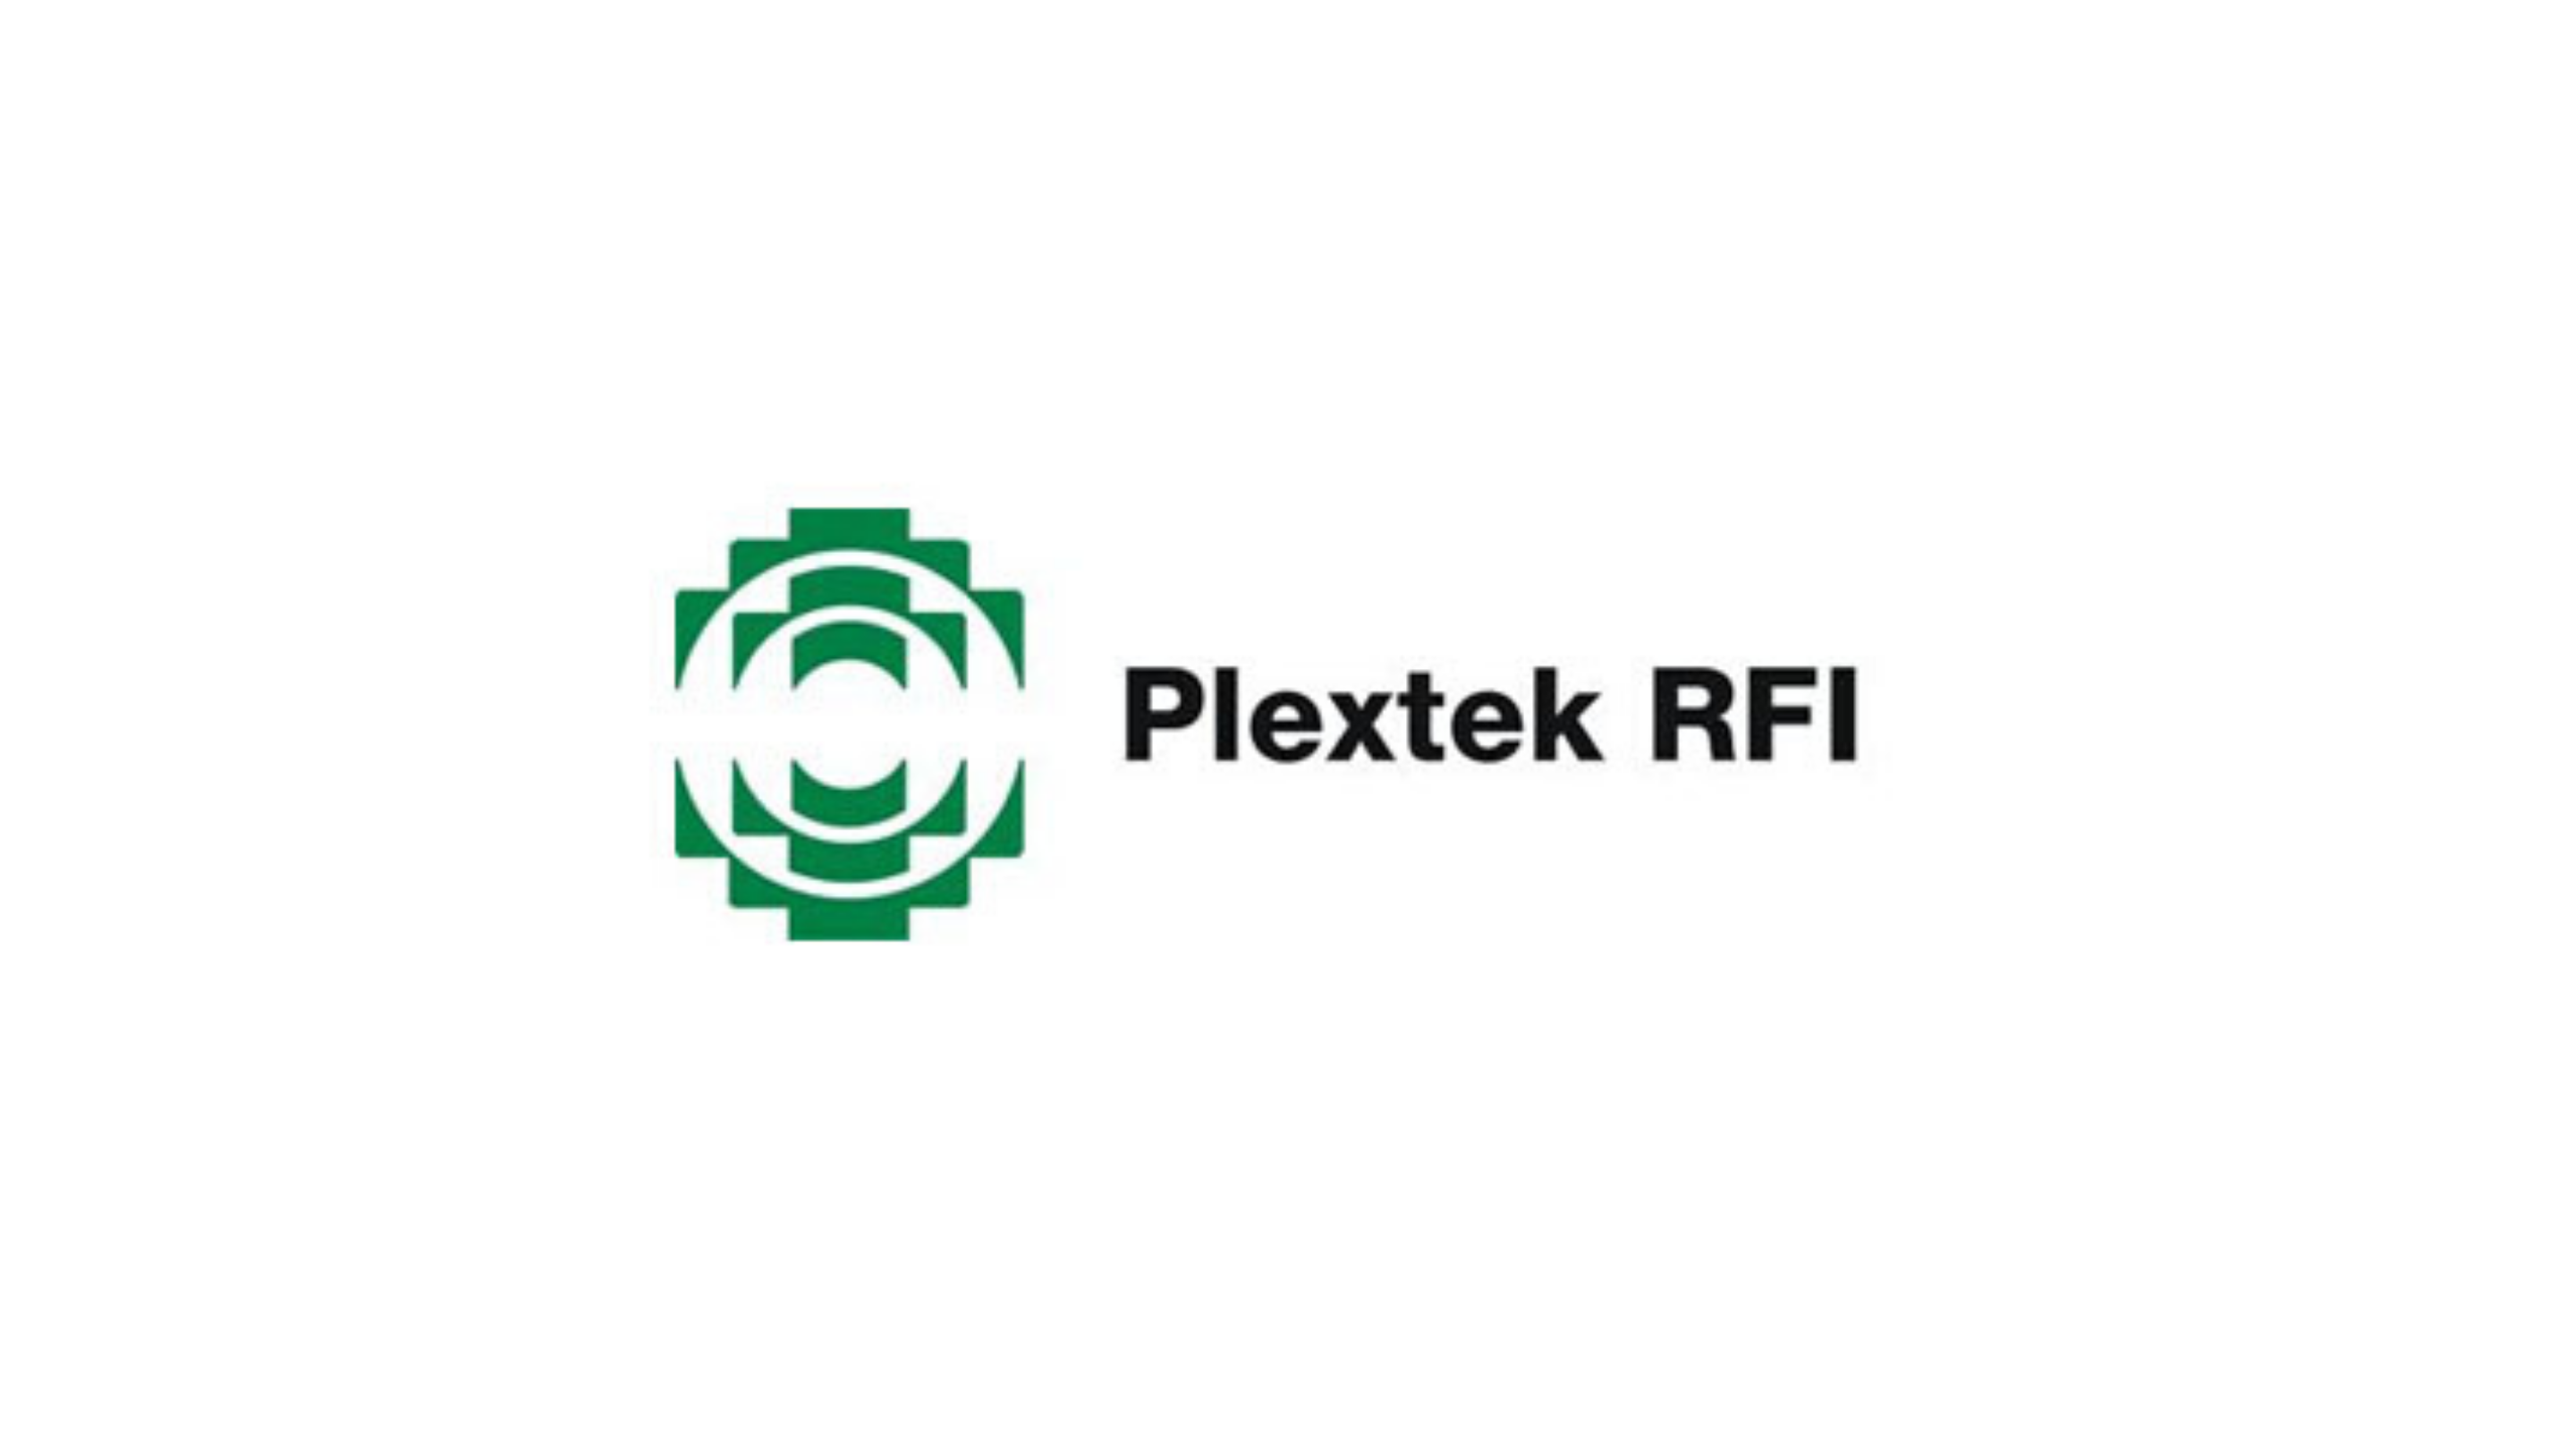 Plextek Group Sells Plextek RFI to CML